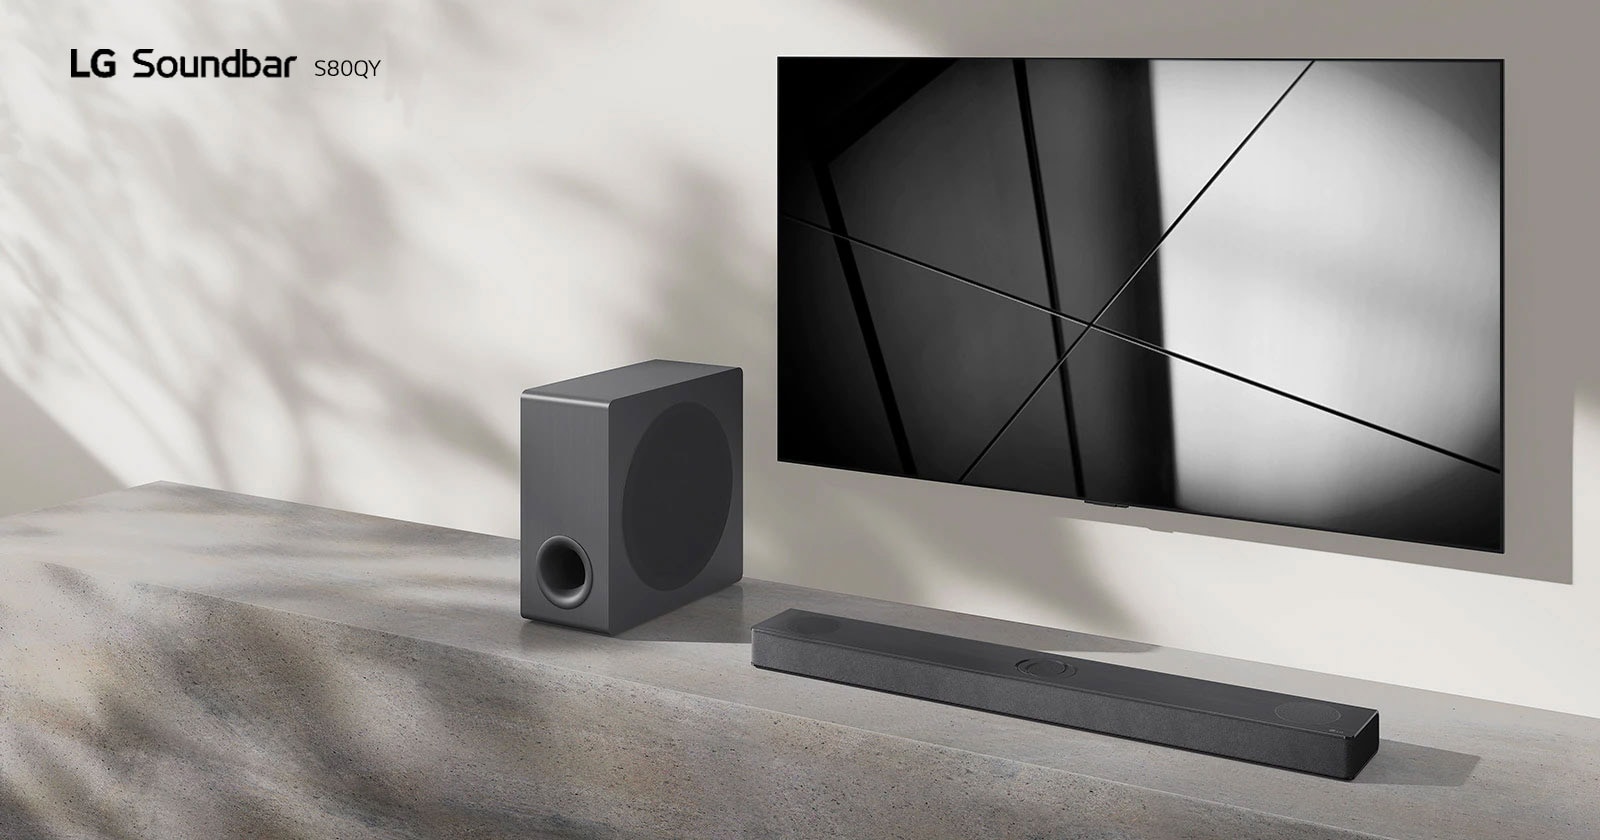 LG Sound Bar S80QY i LG TV postavljeni su zajedno u dnevnoj sobi. Televizor je uključen i prikazuje se crno-bela slika.